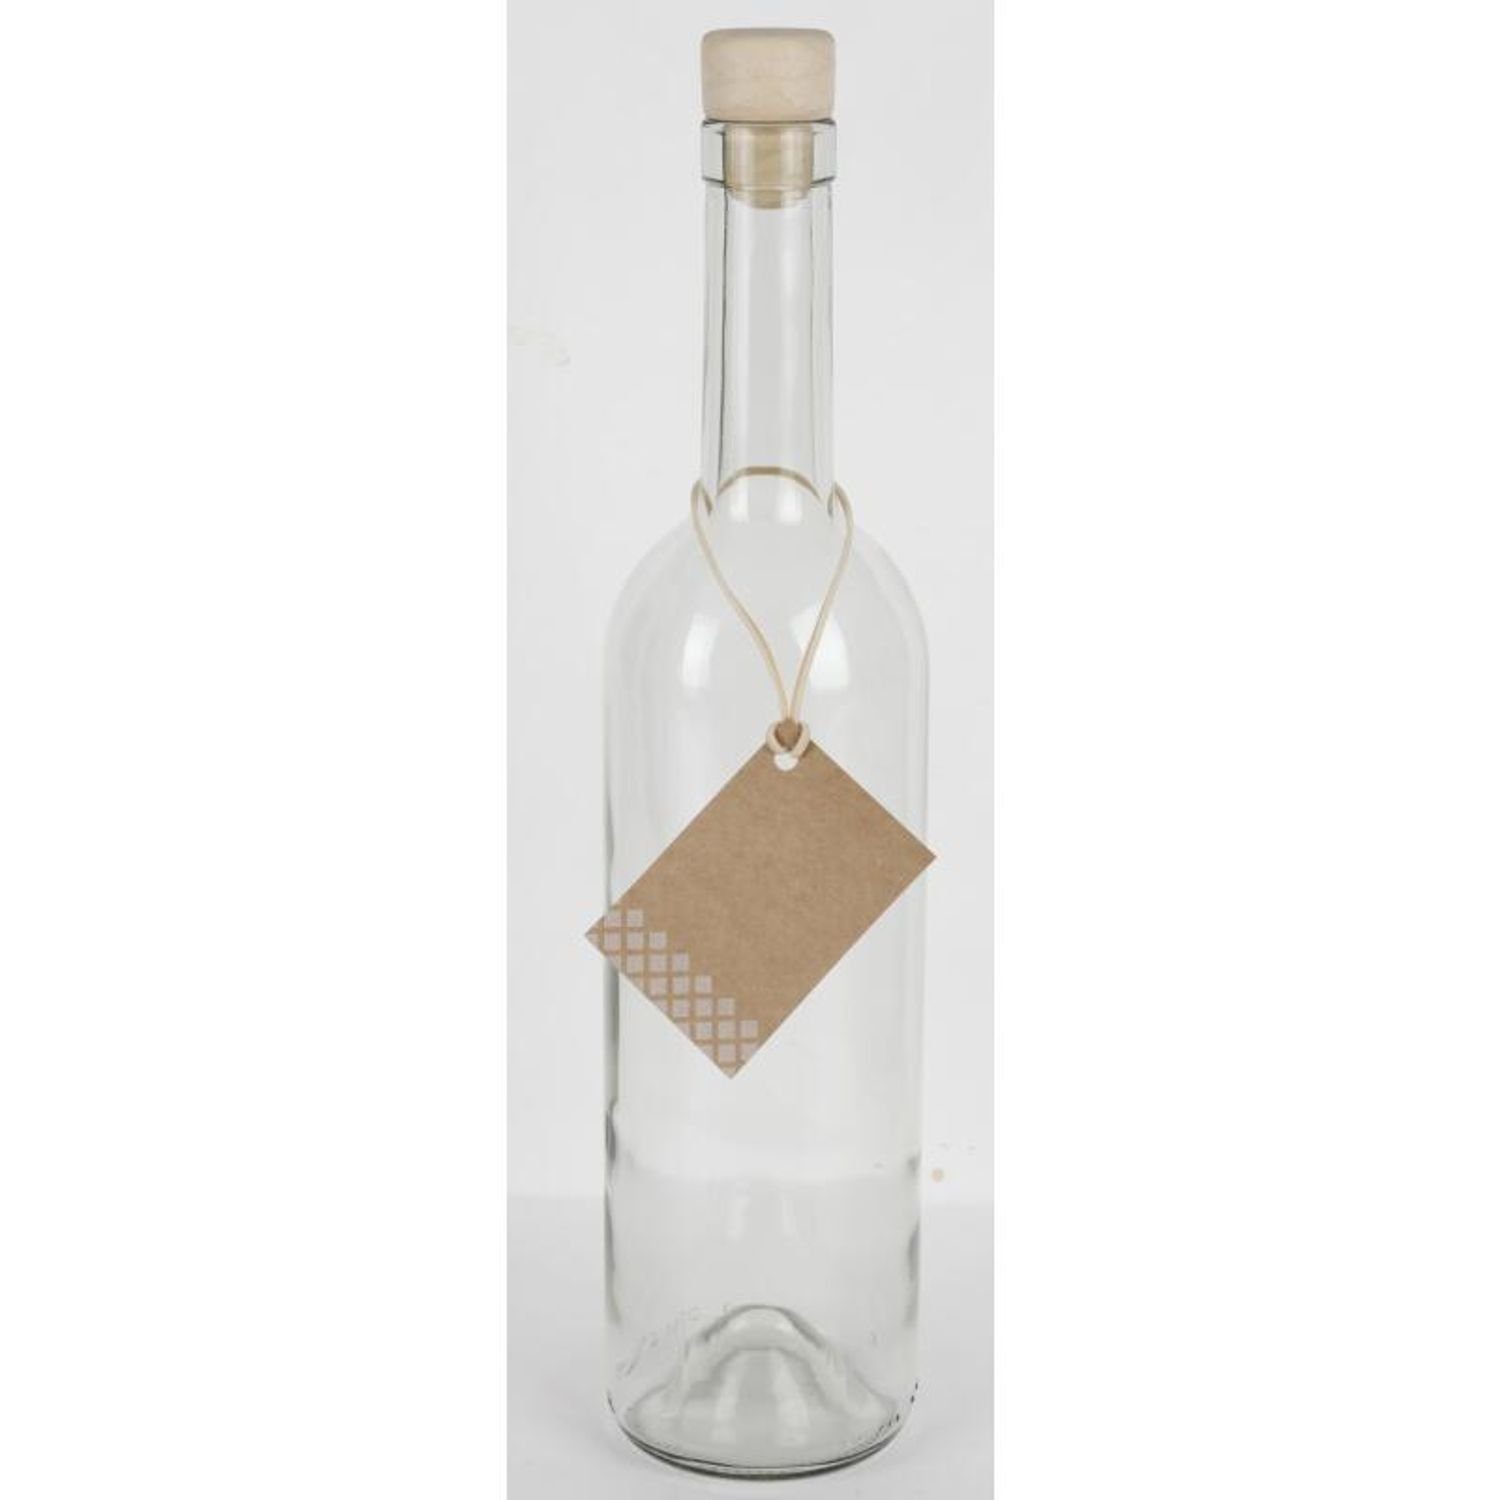 Omega Spolka Jawna 0,75L Saft Glasflasche Trinken Trinkflasche Küc 15x Etikett Wasser Korkenverschluss